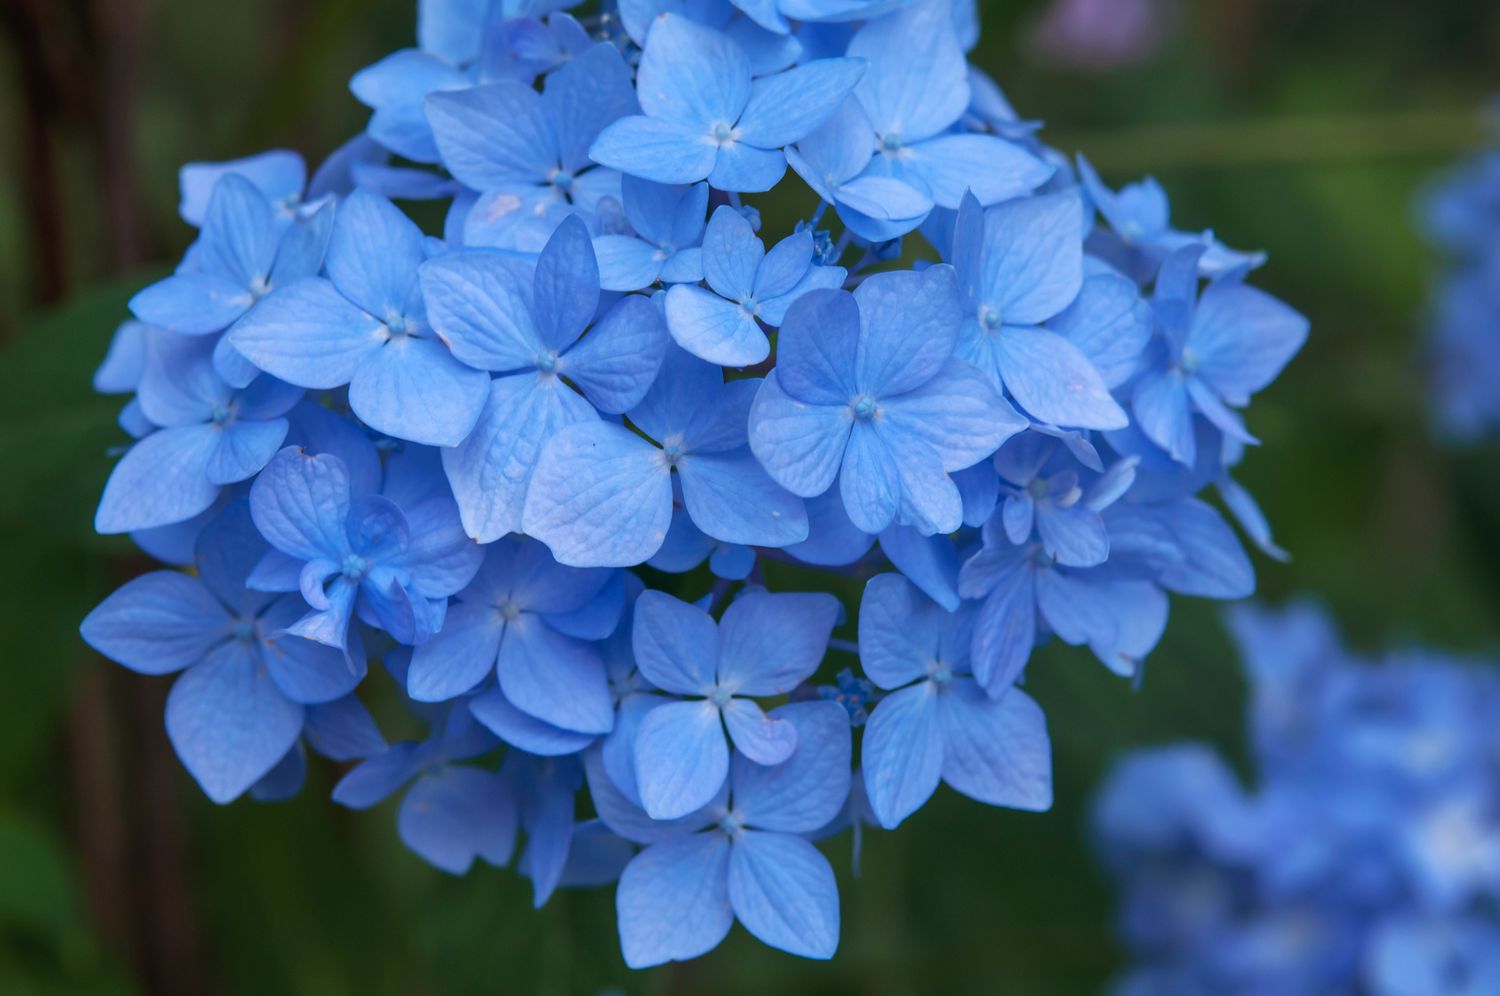 Nikko blaue Hortensie mit blauen Blüten in Großaufnahme